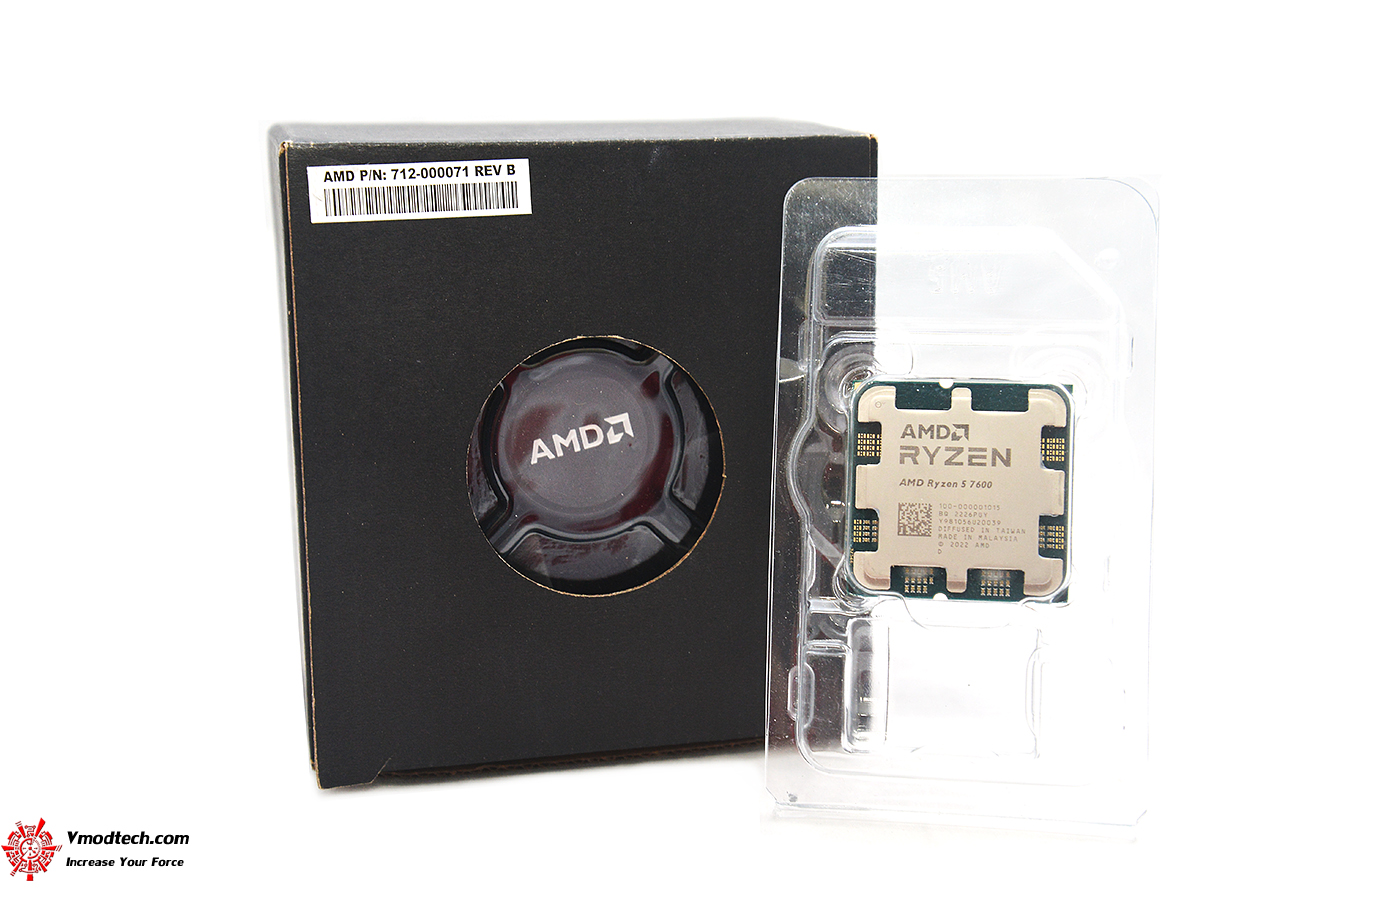 dsc 3743 AMD RYZEN 5 7600 PROCESSOR REVIEW